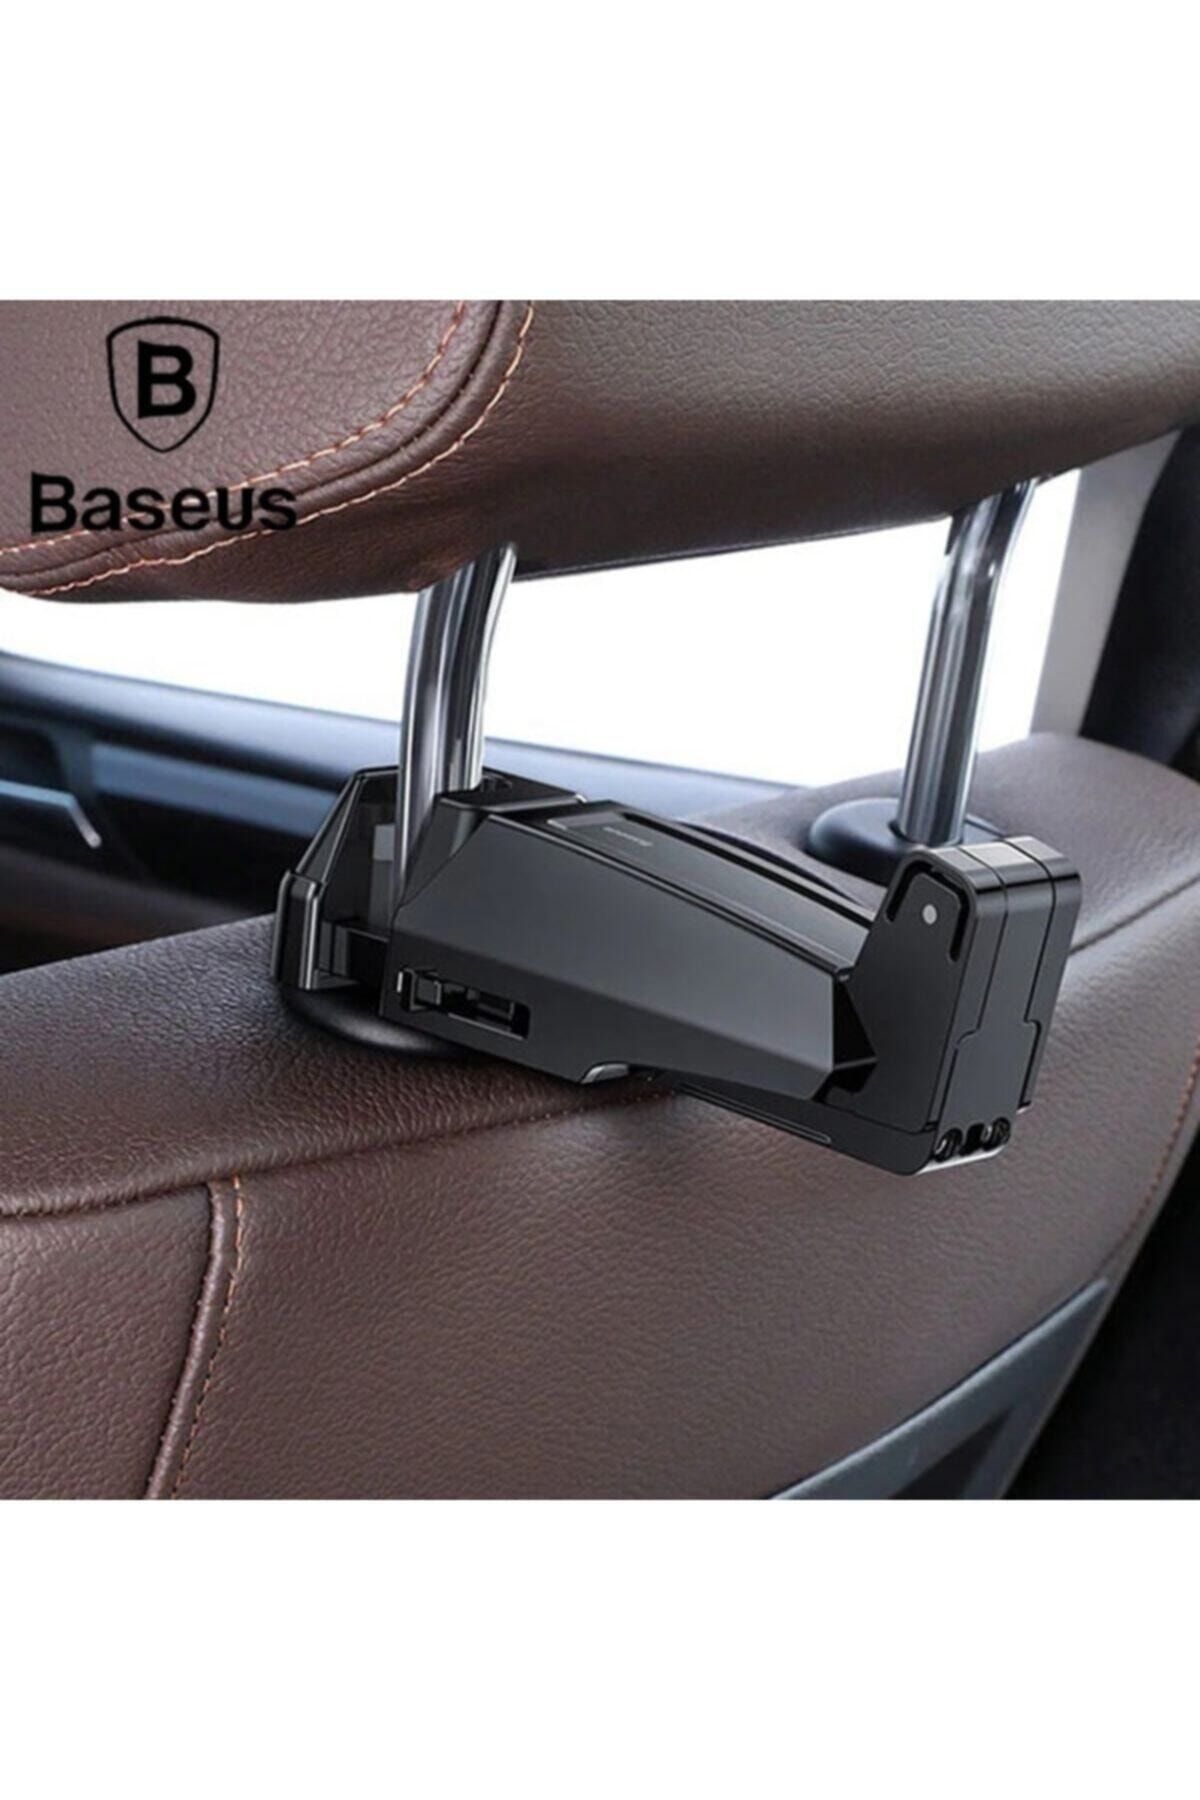 Baseus Backseat Araba Koltuk Arkası Eşya Ve Telefon Tutucu - Siyah